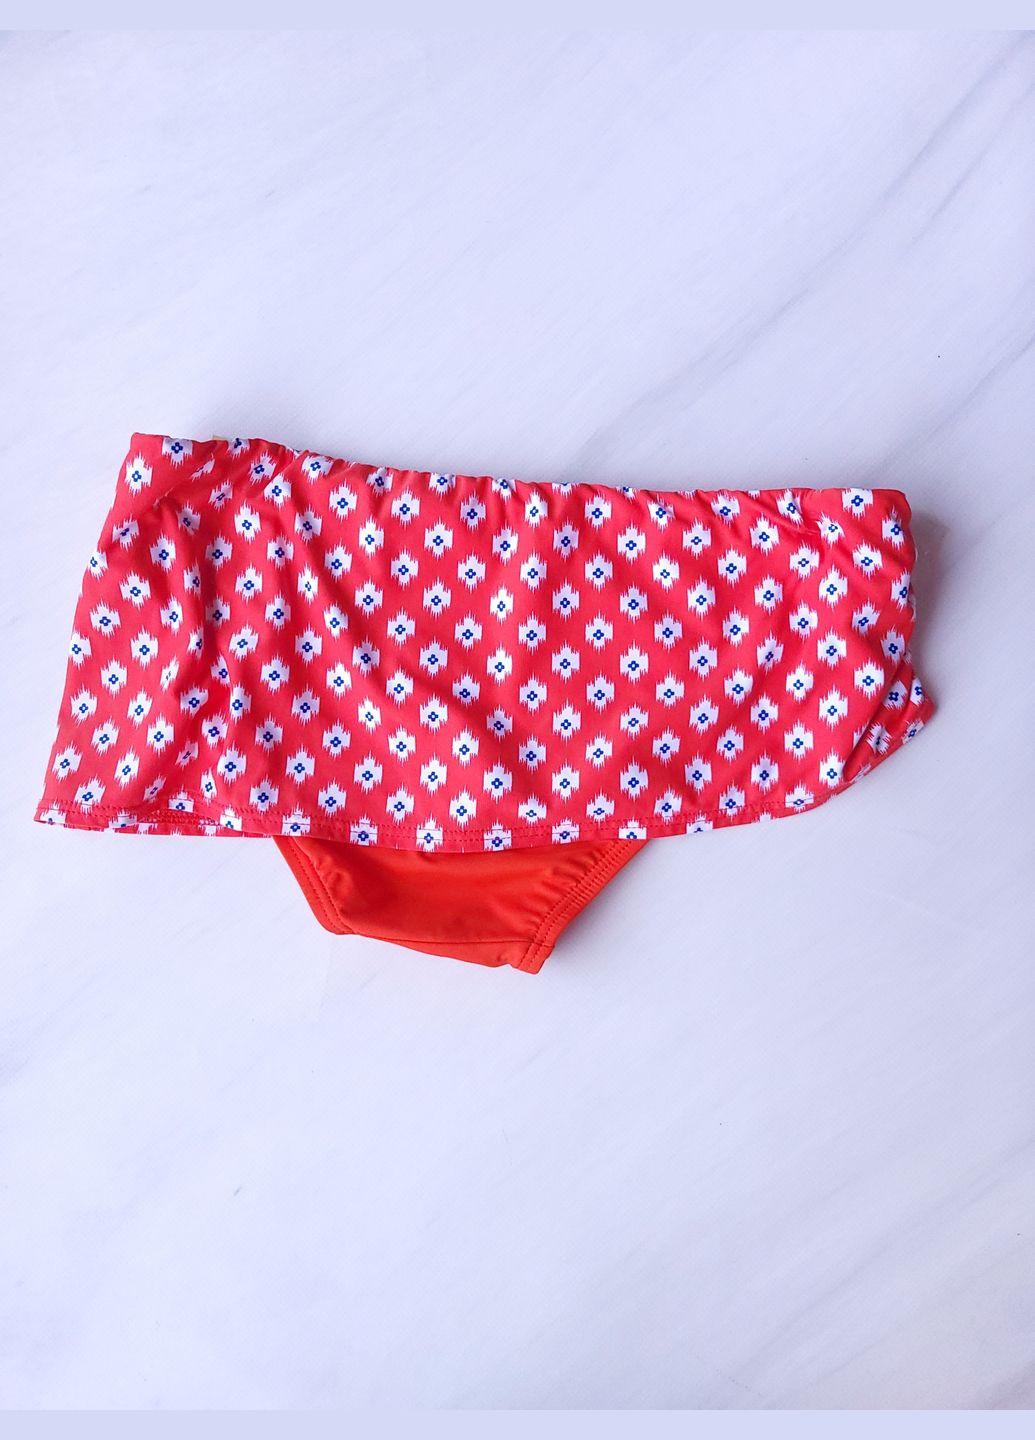 Красные трусы купальные плавки женские с вшитой юбкой Michael Kors